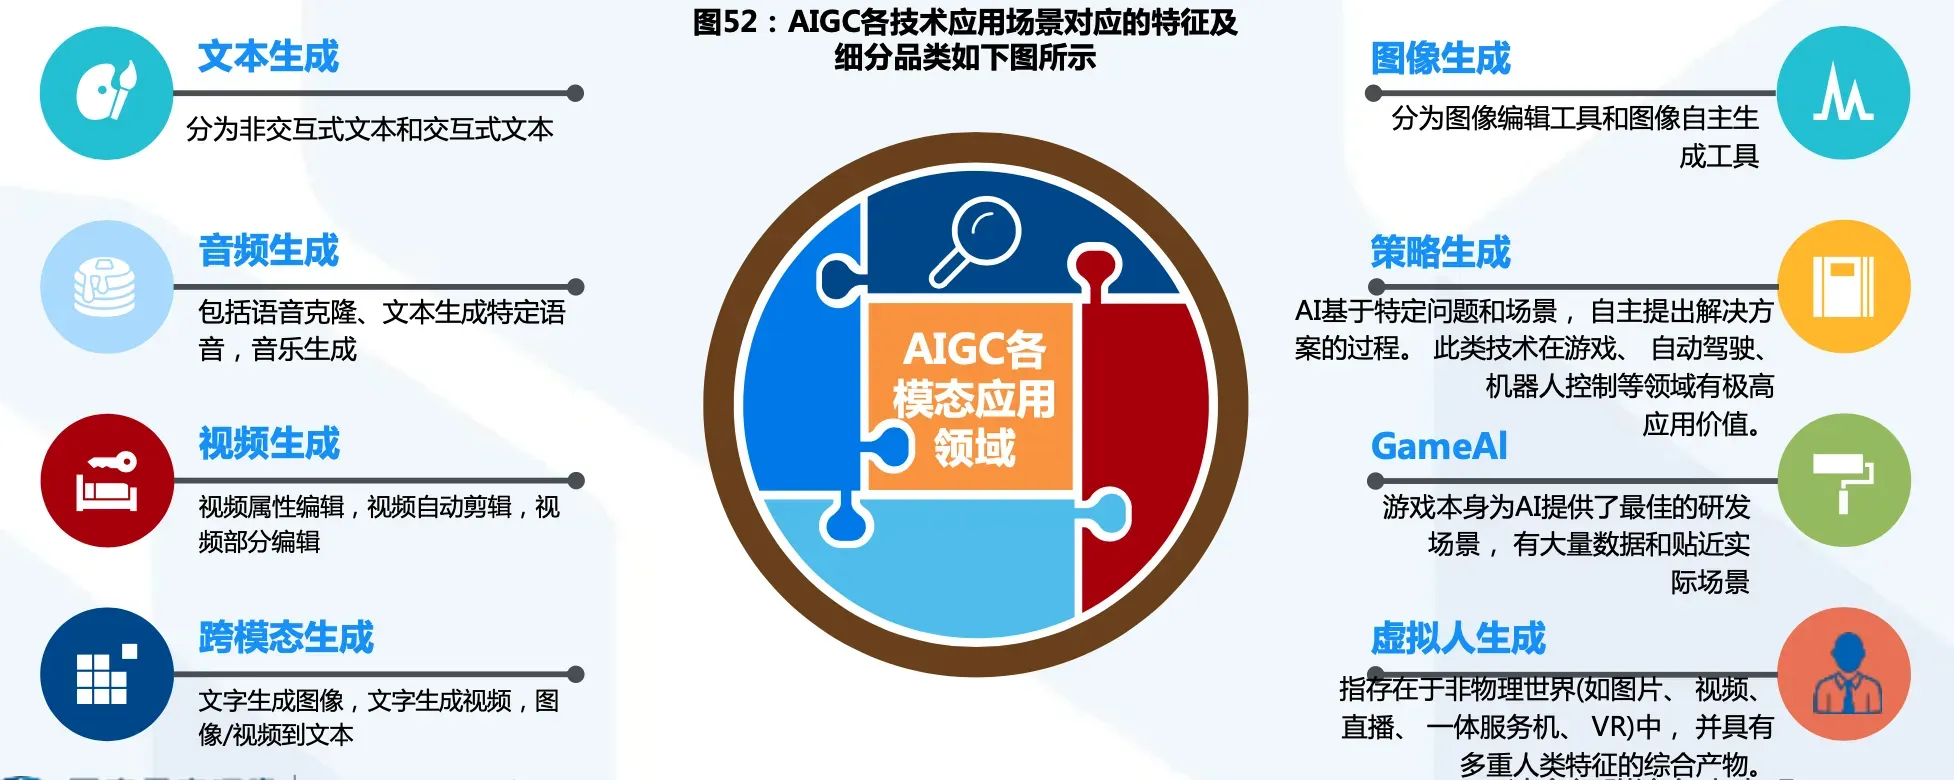 AIGC各技术应用场景对应的特征及细分品类如图所示